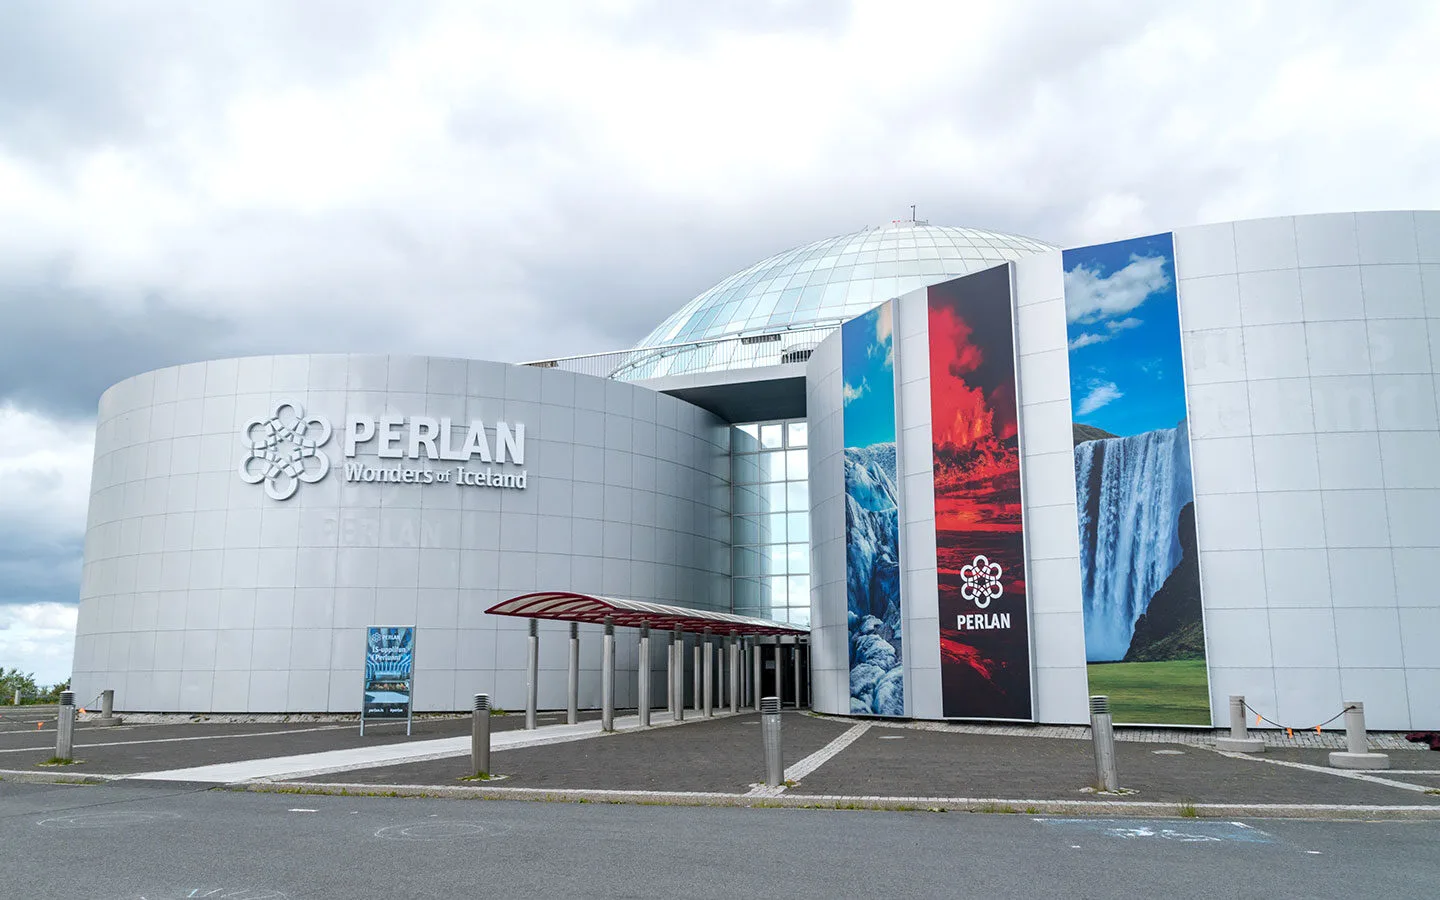 Perlan Wonders of Iceland museum in Reykjavik